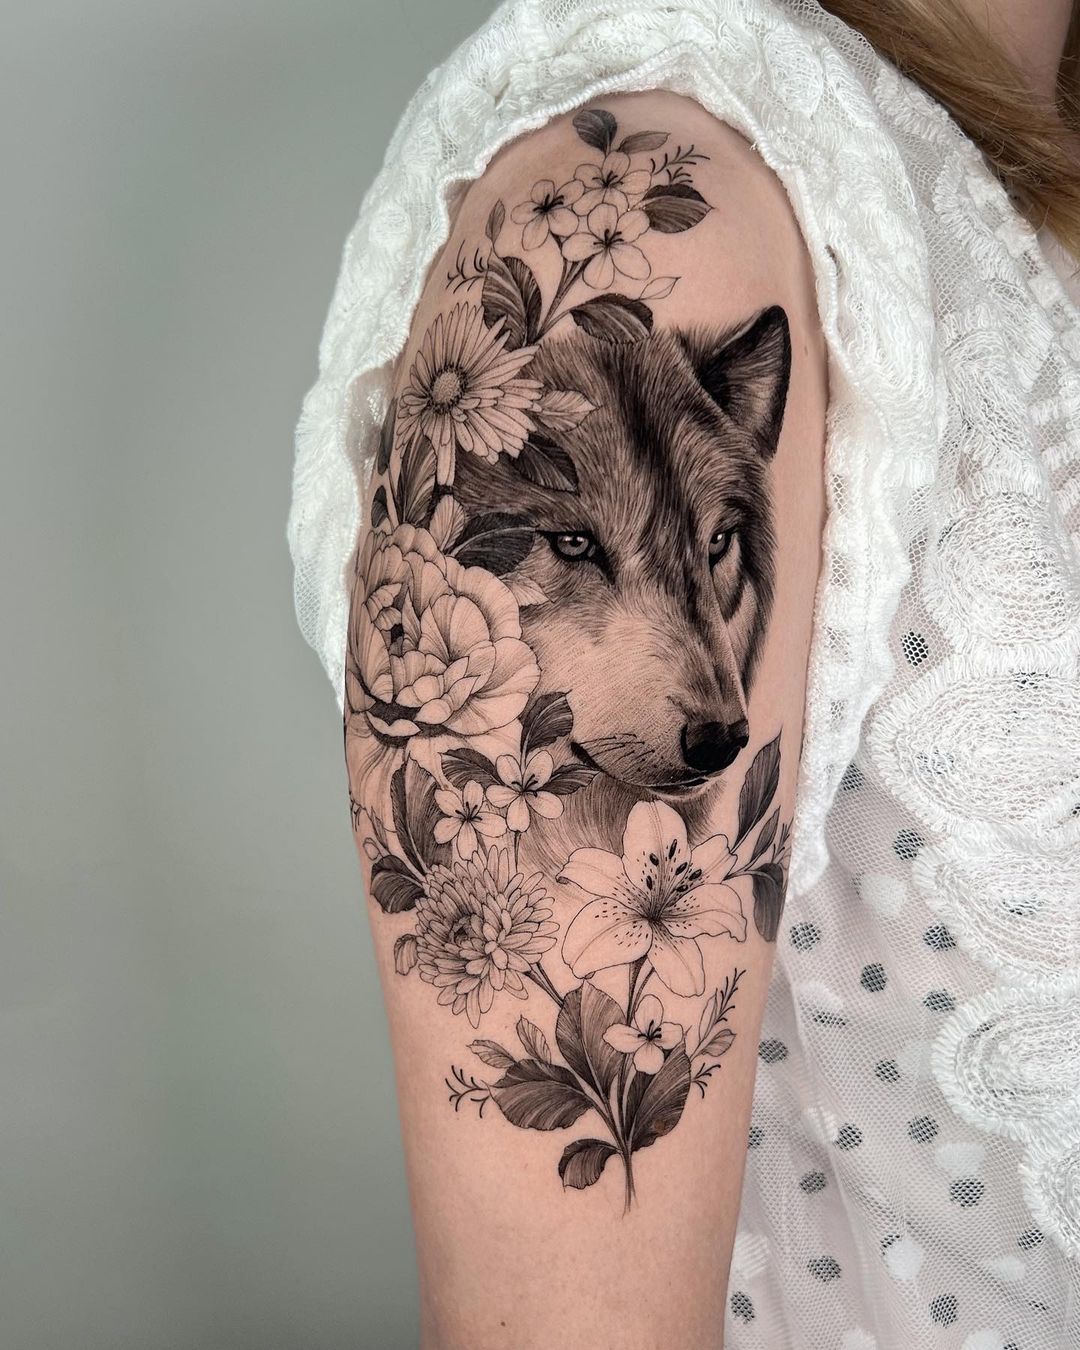 Что еще символизирует тату волка?